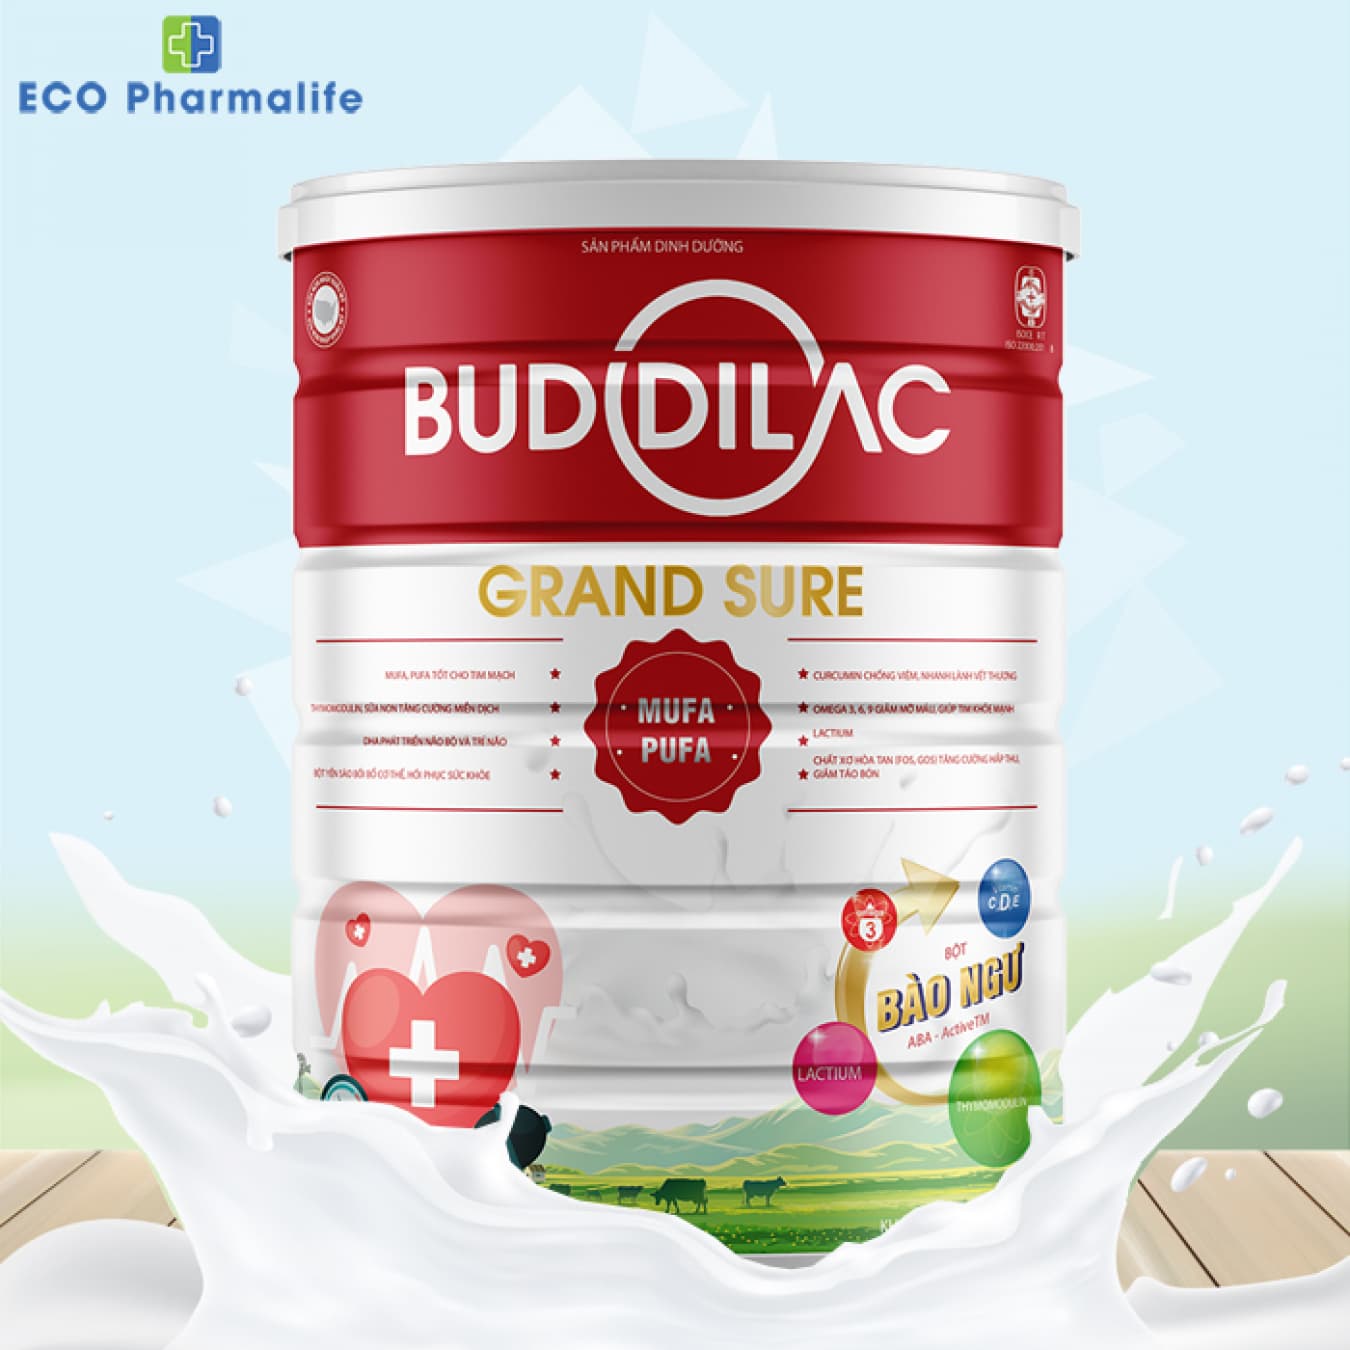 Sữa Buddilac Grand Sure hộp 900g tăng cường sức khỏe tim mạch